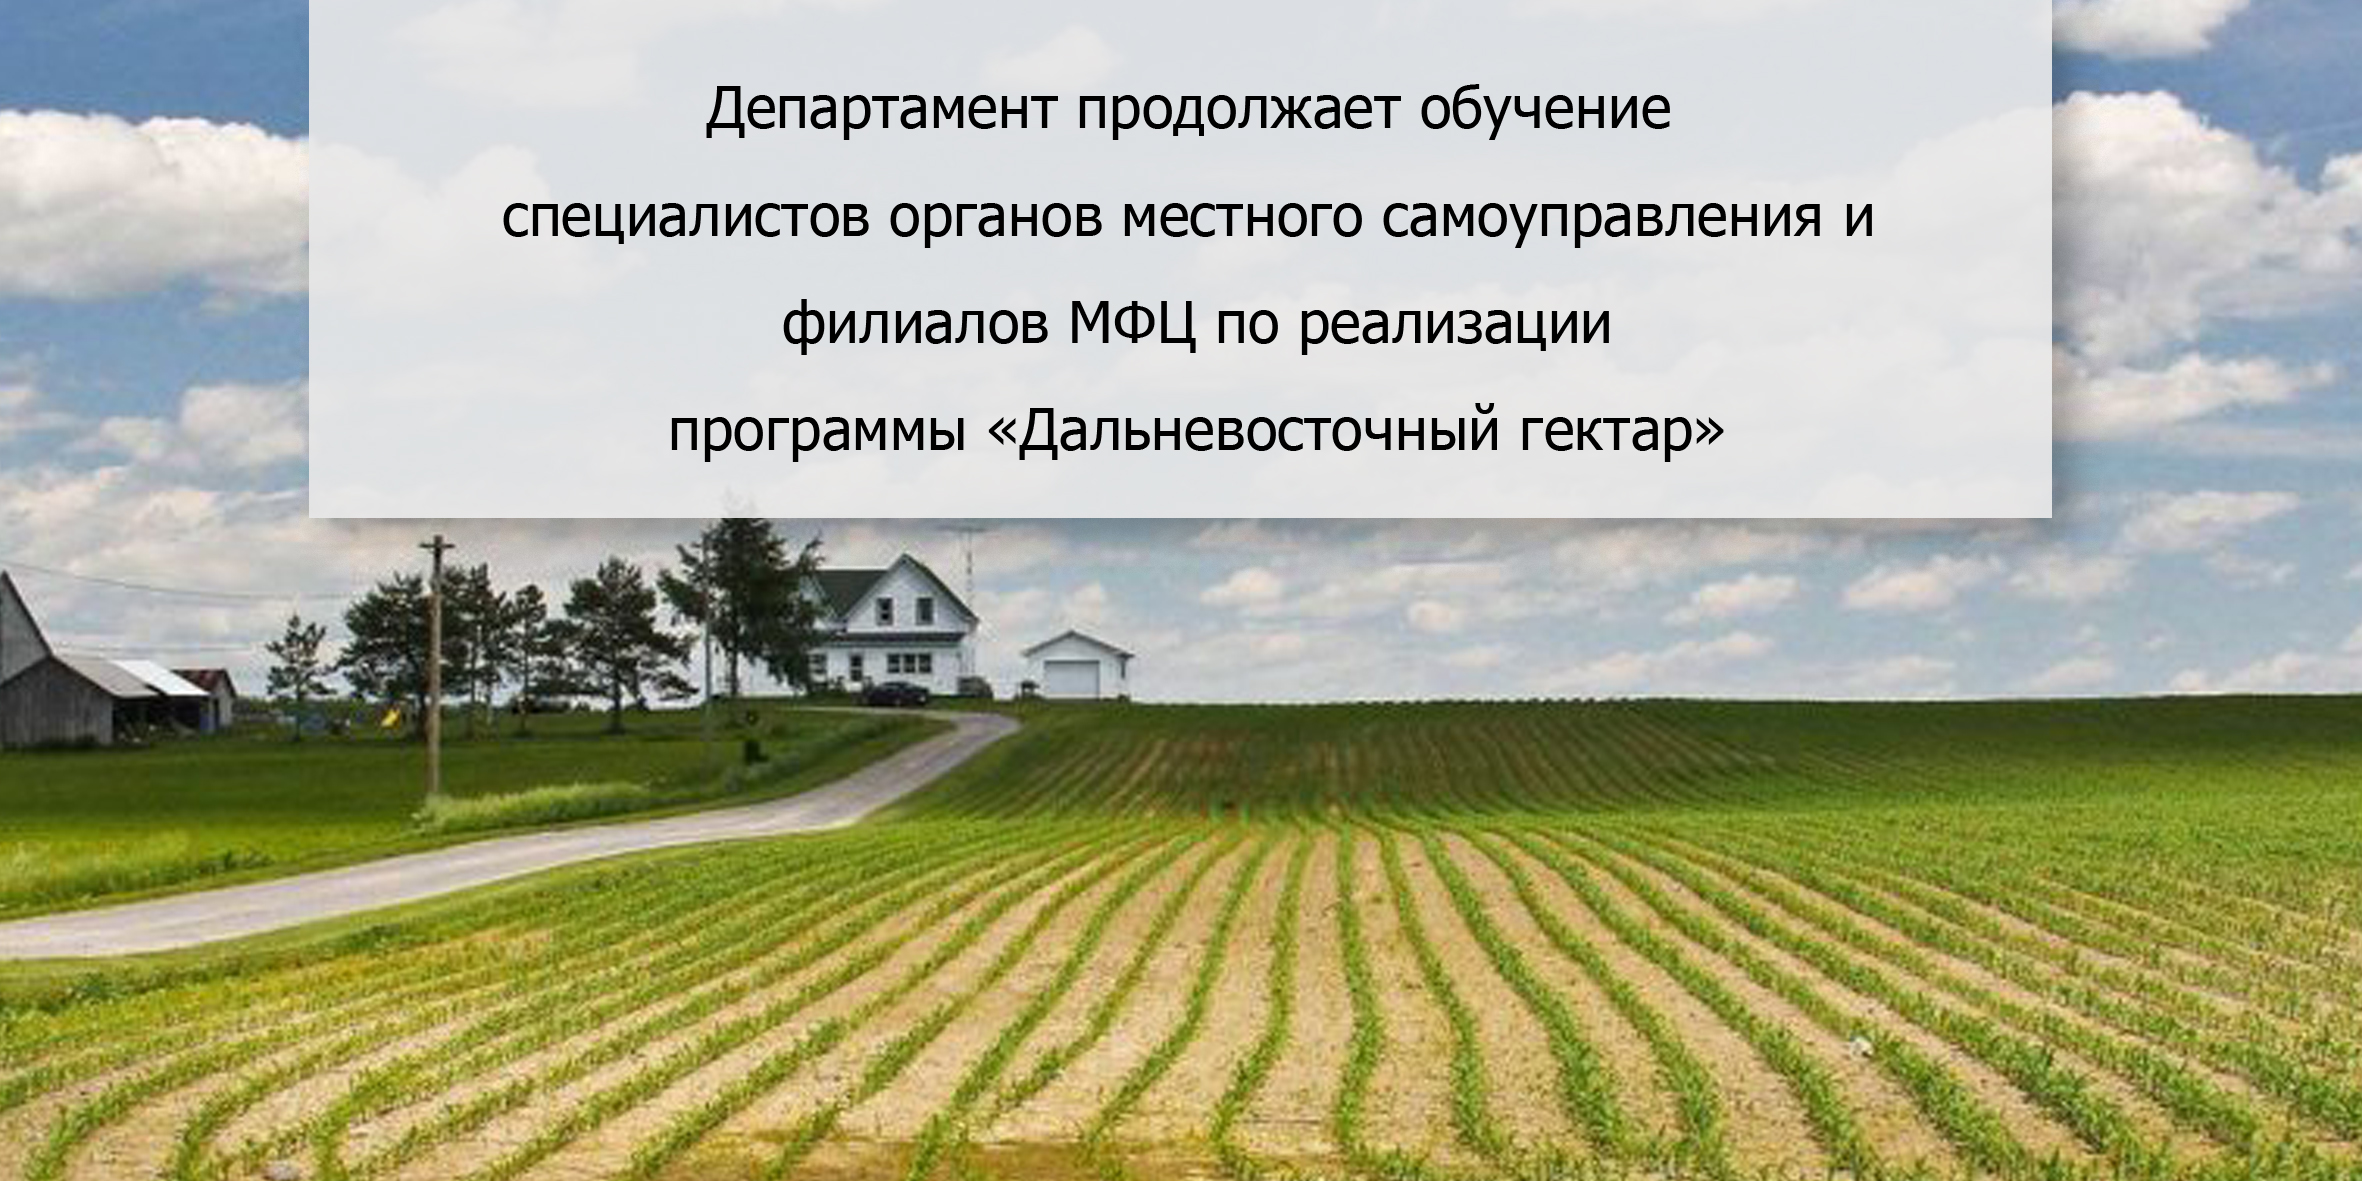 Департамент имущества и земельных отношений забайкальского края